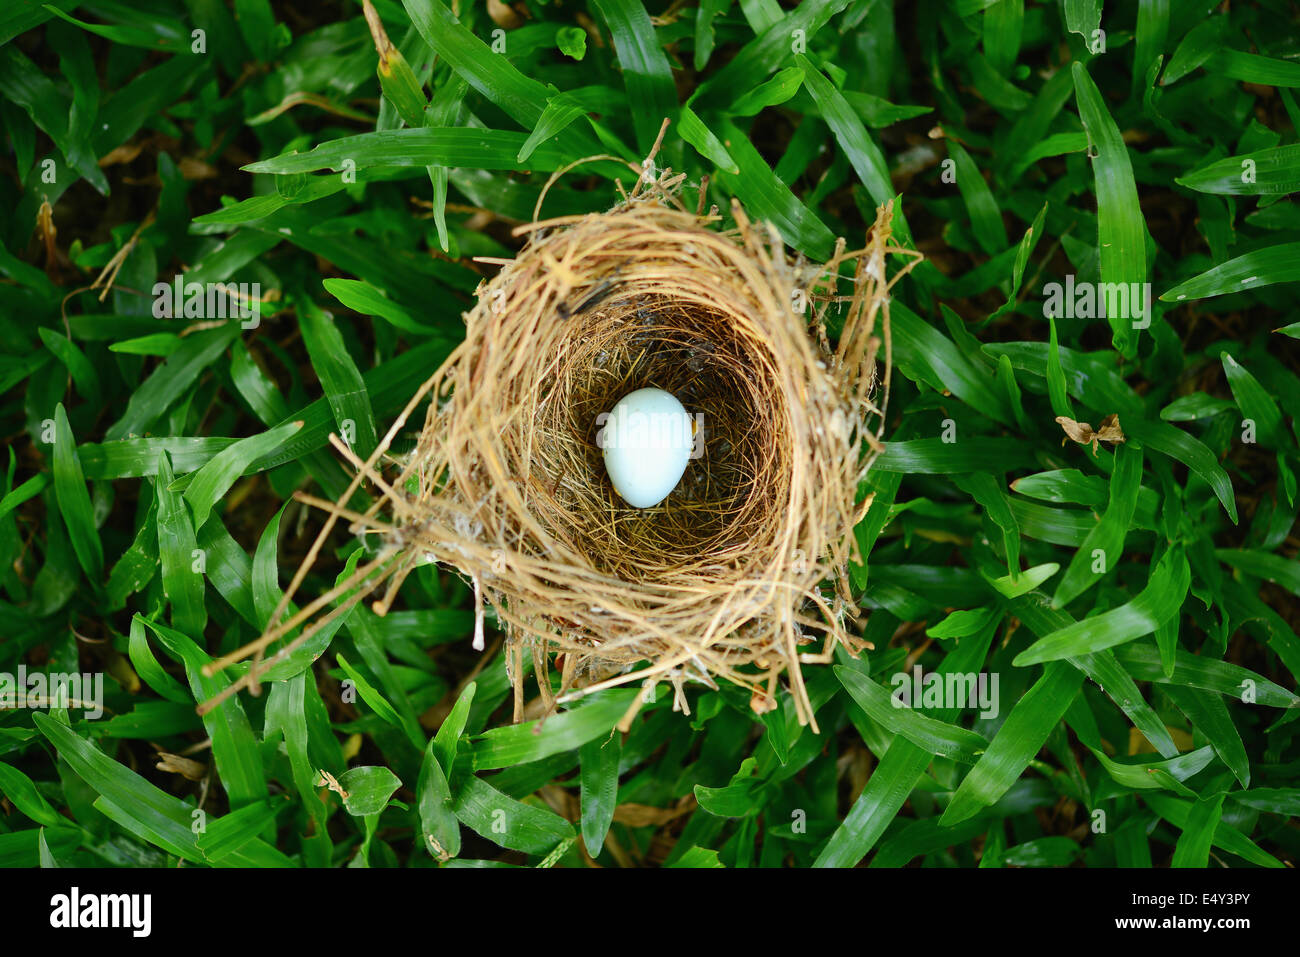 bird nest on grass Stock Photo